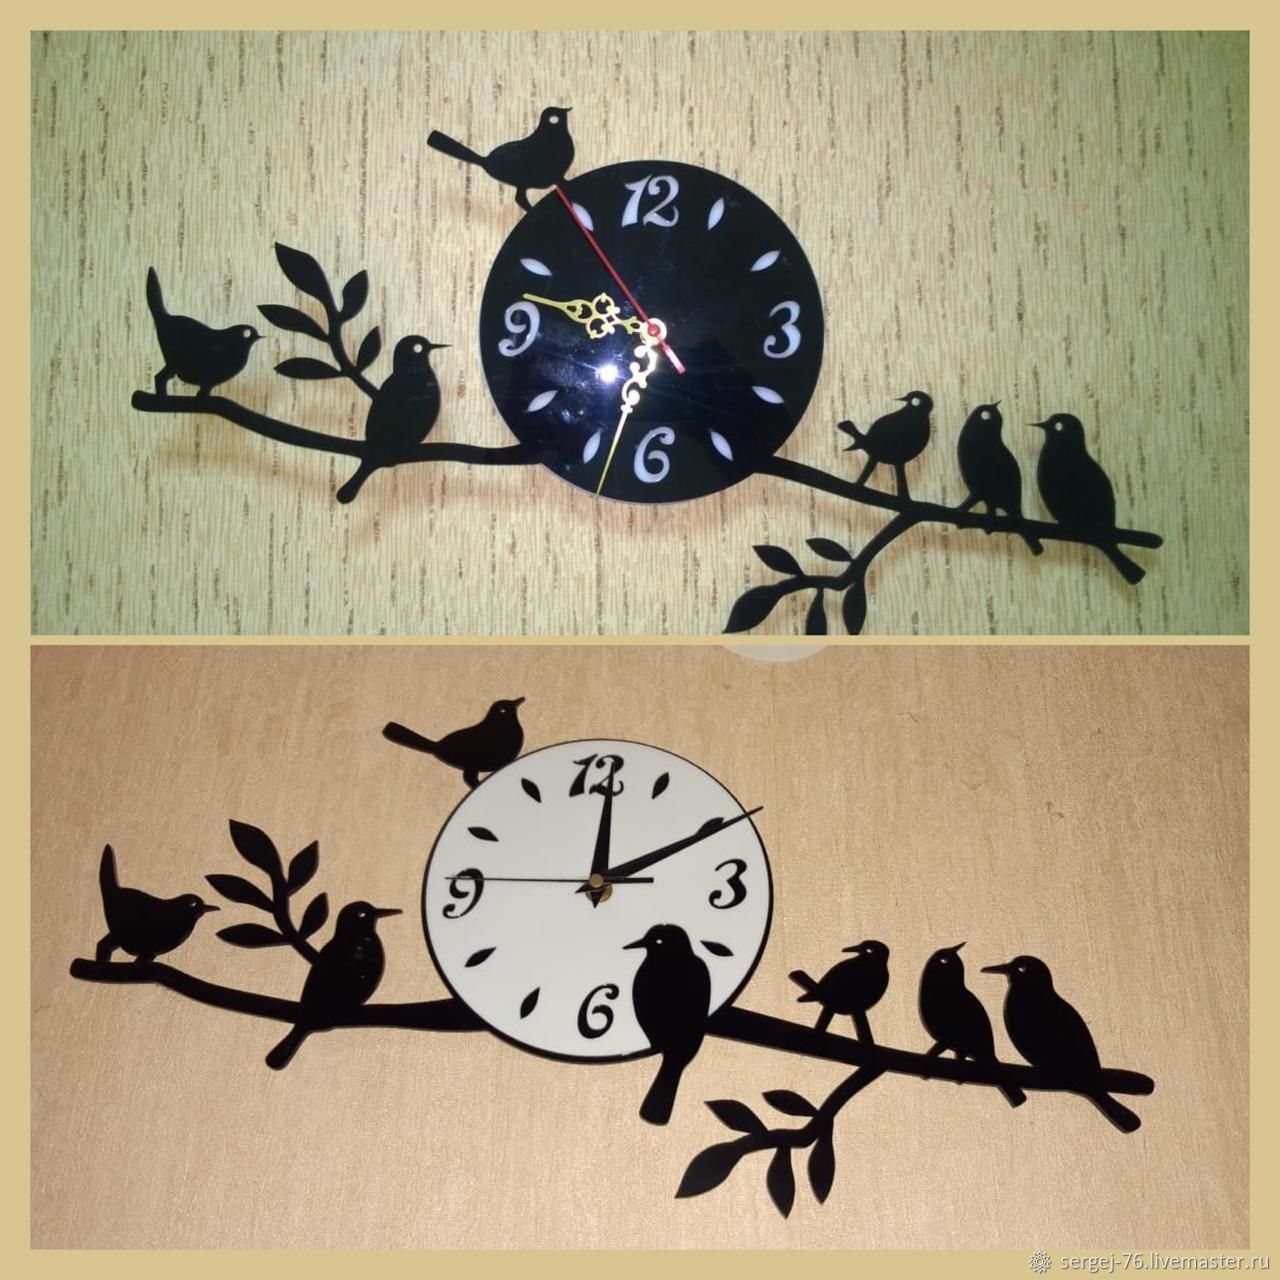 Часы с птичками